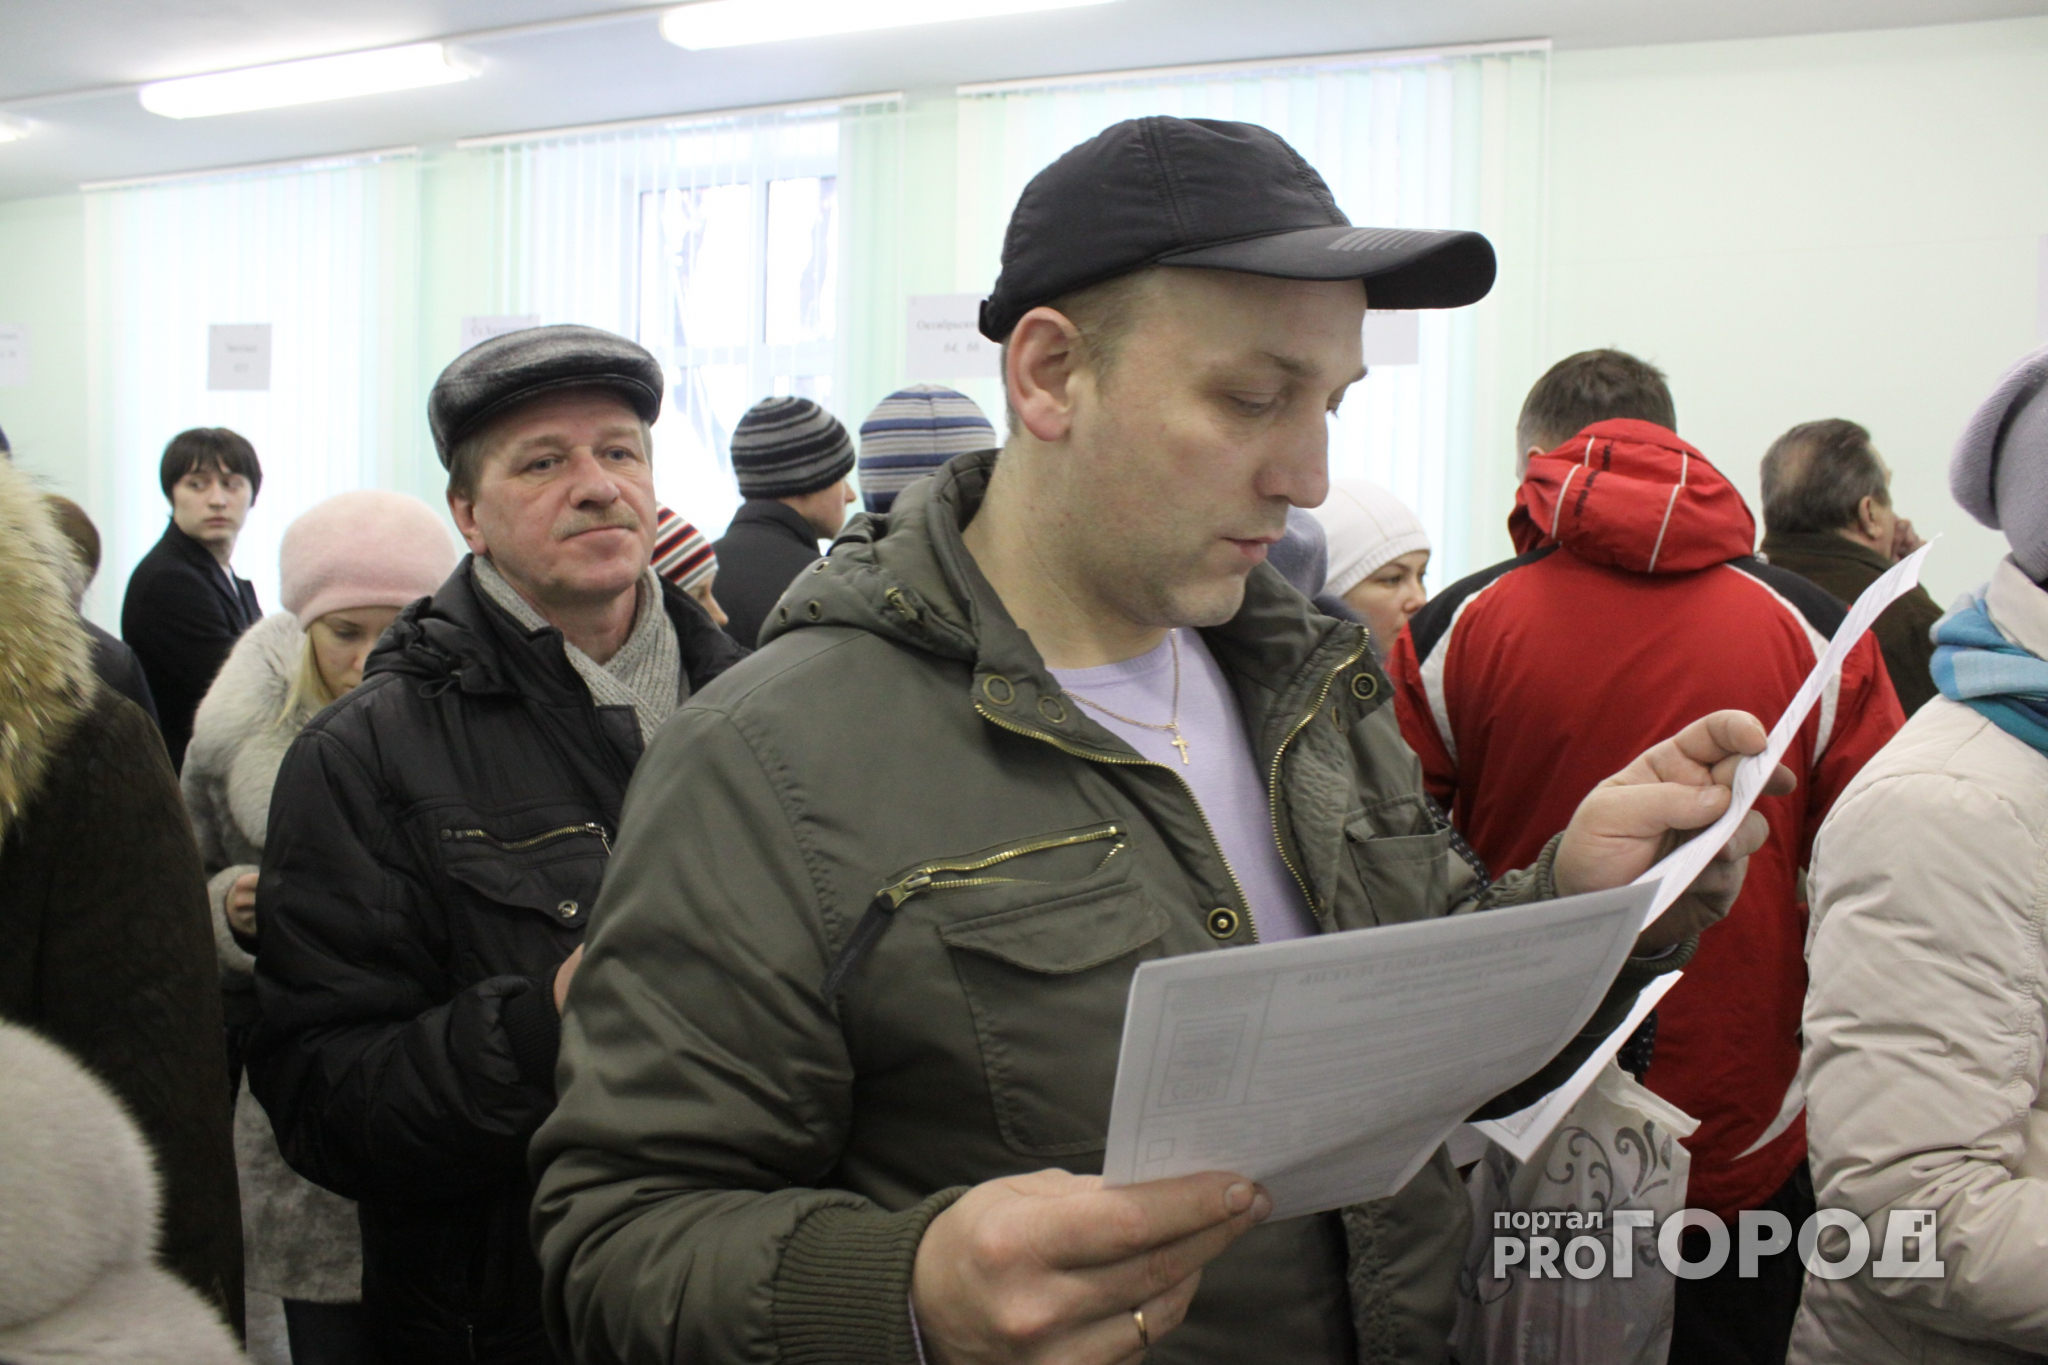 К 15 часам явка избирателей по Ярославской области достигла 48 процентов